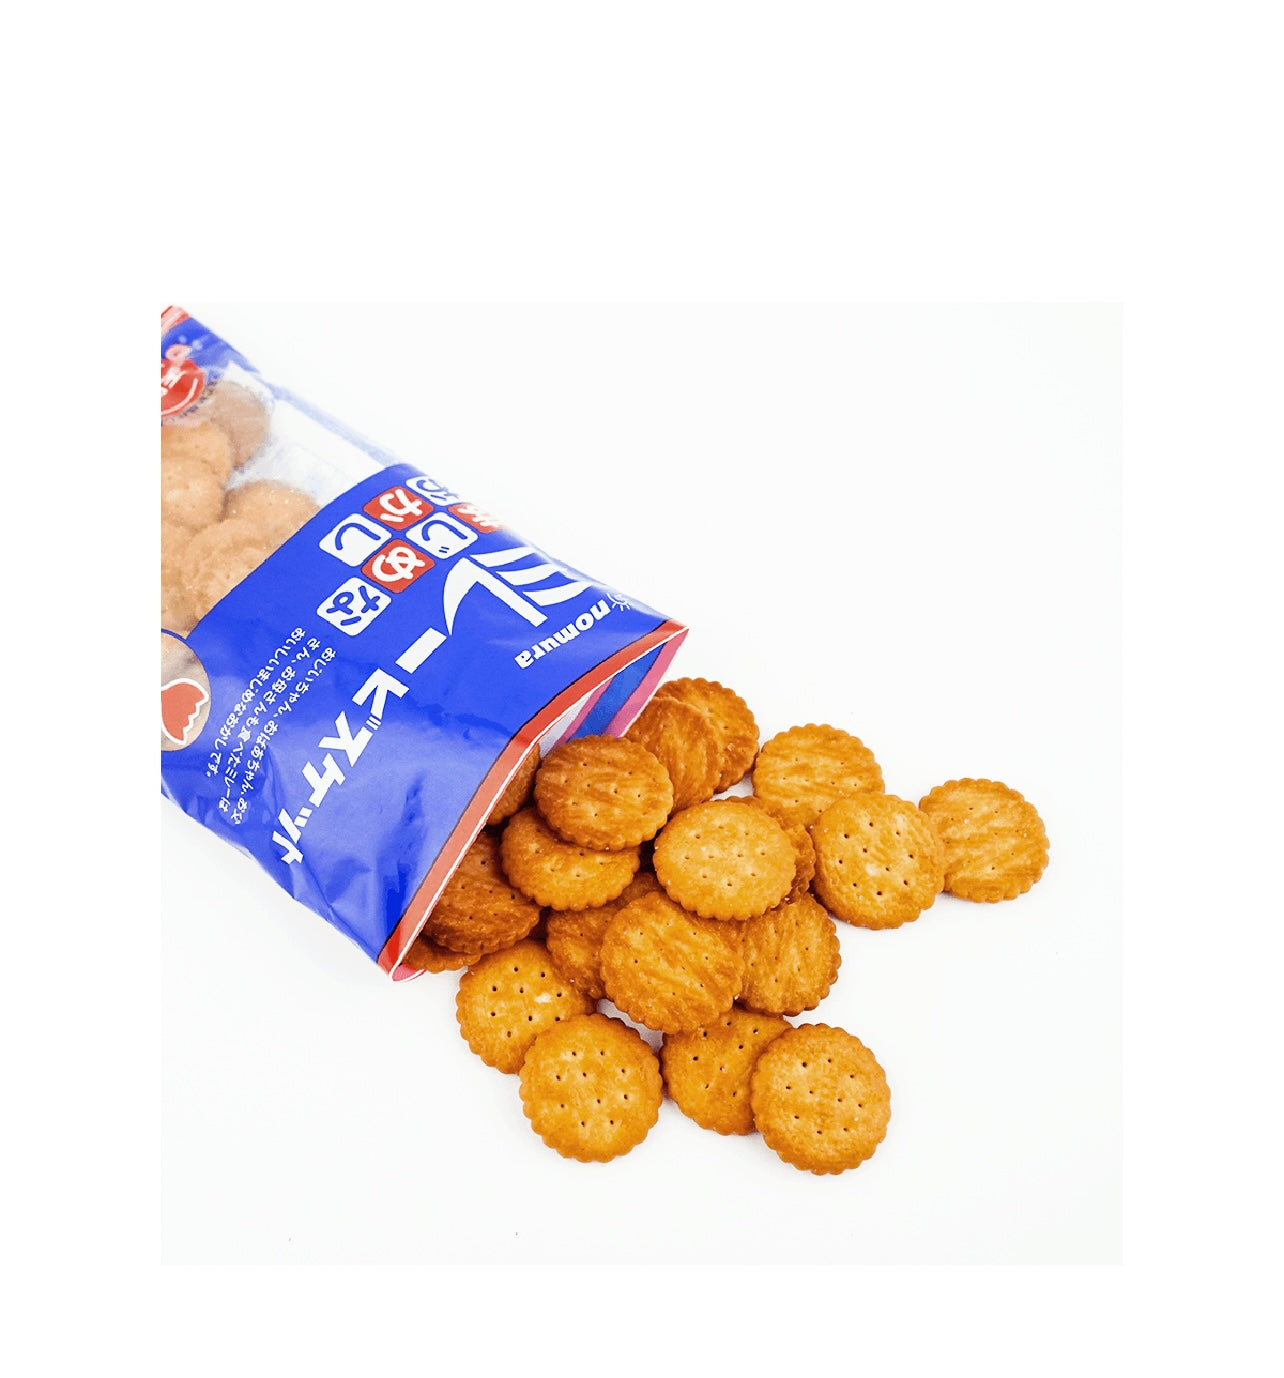 NOMURA Majime Millet Biscuits, 120g